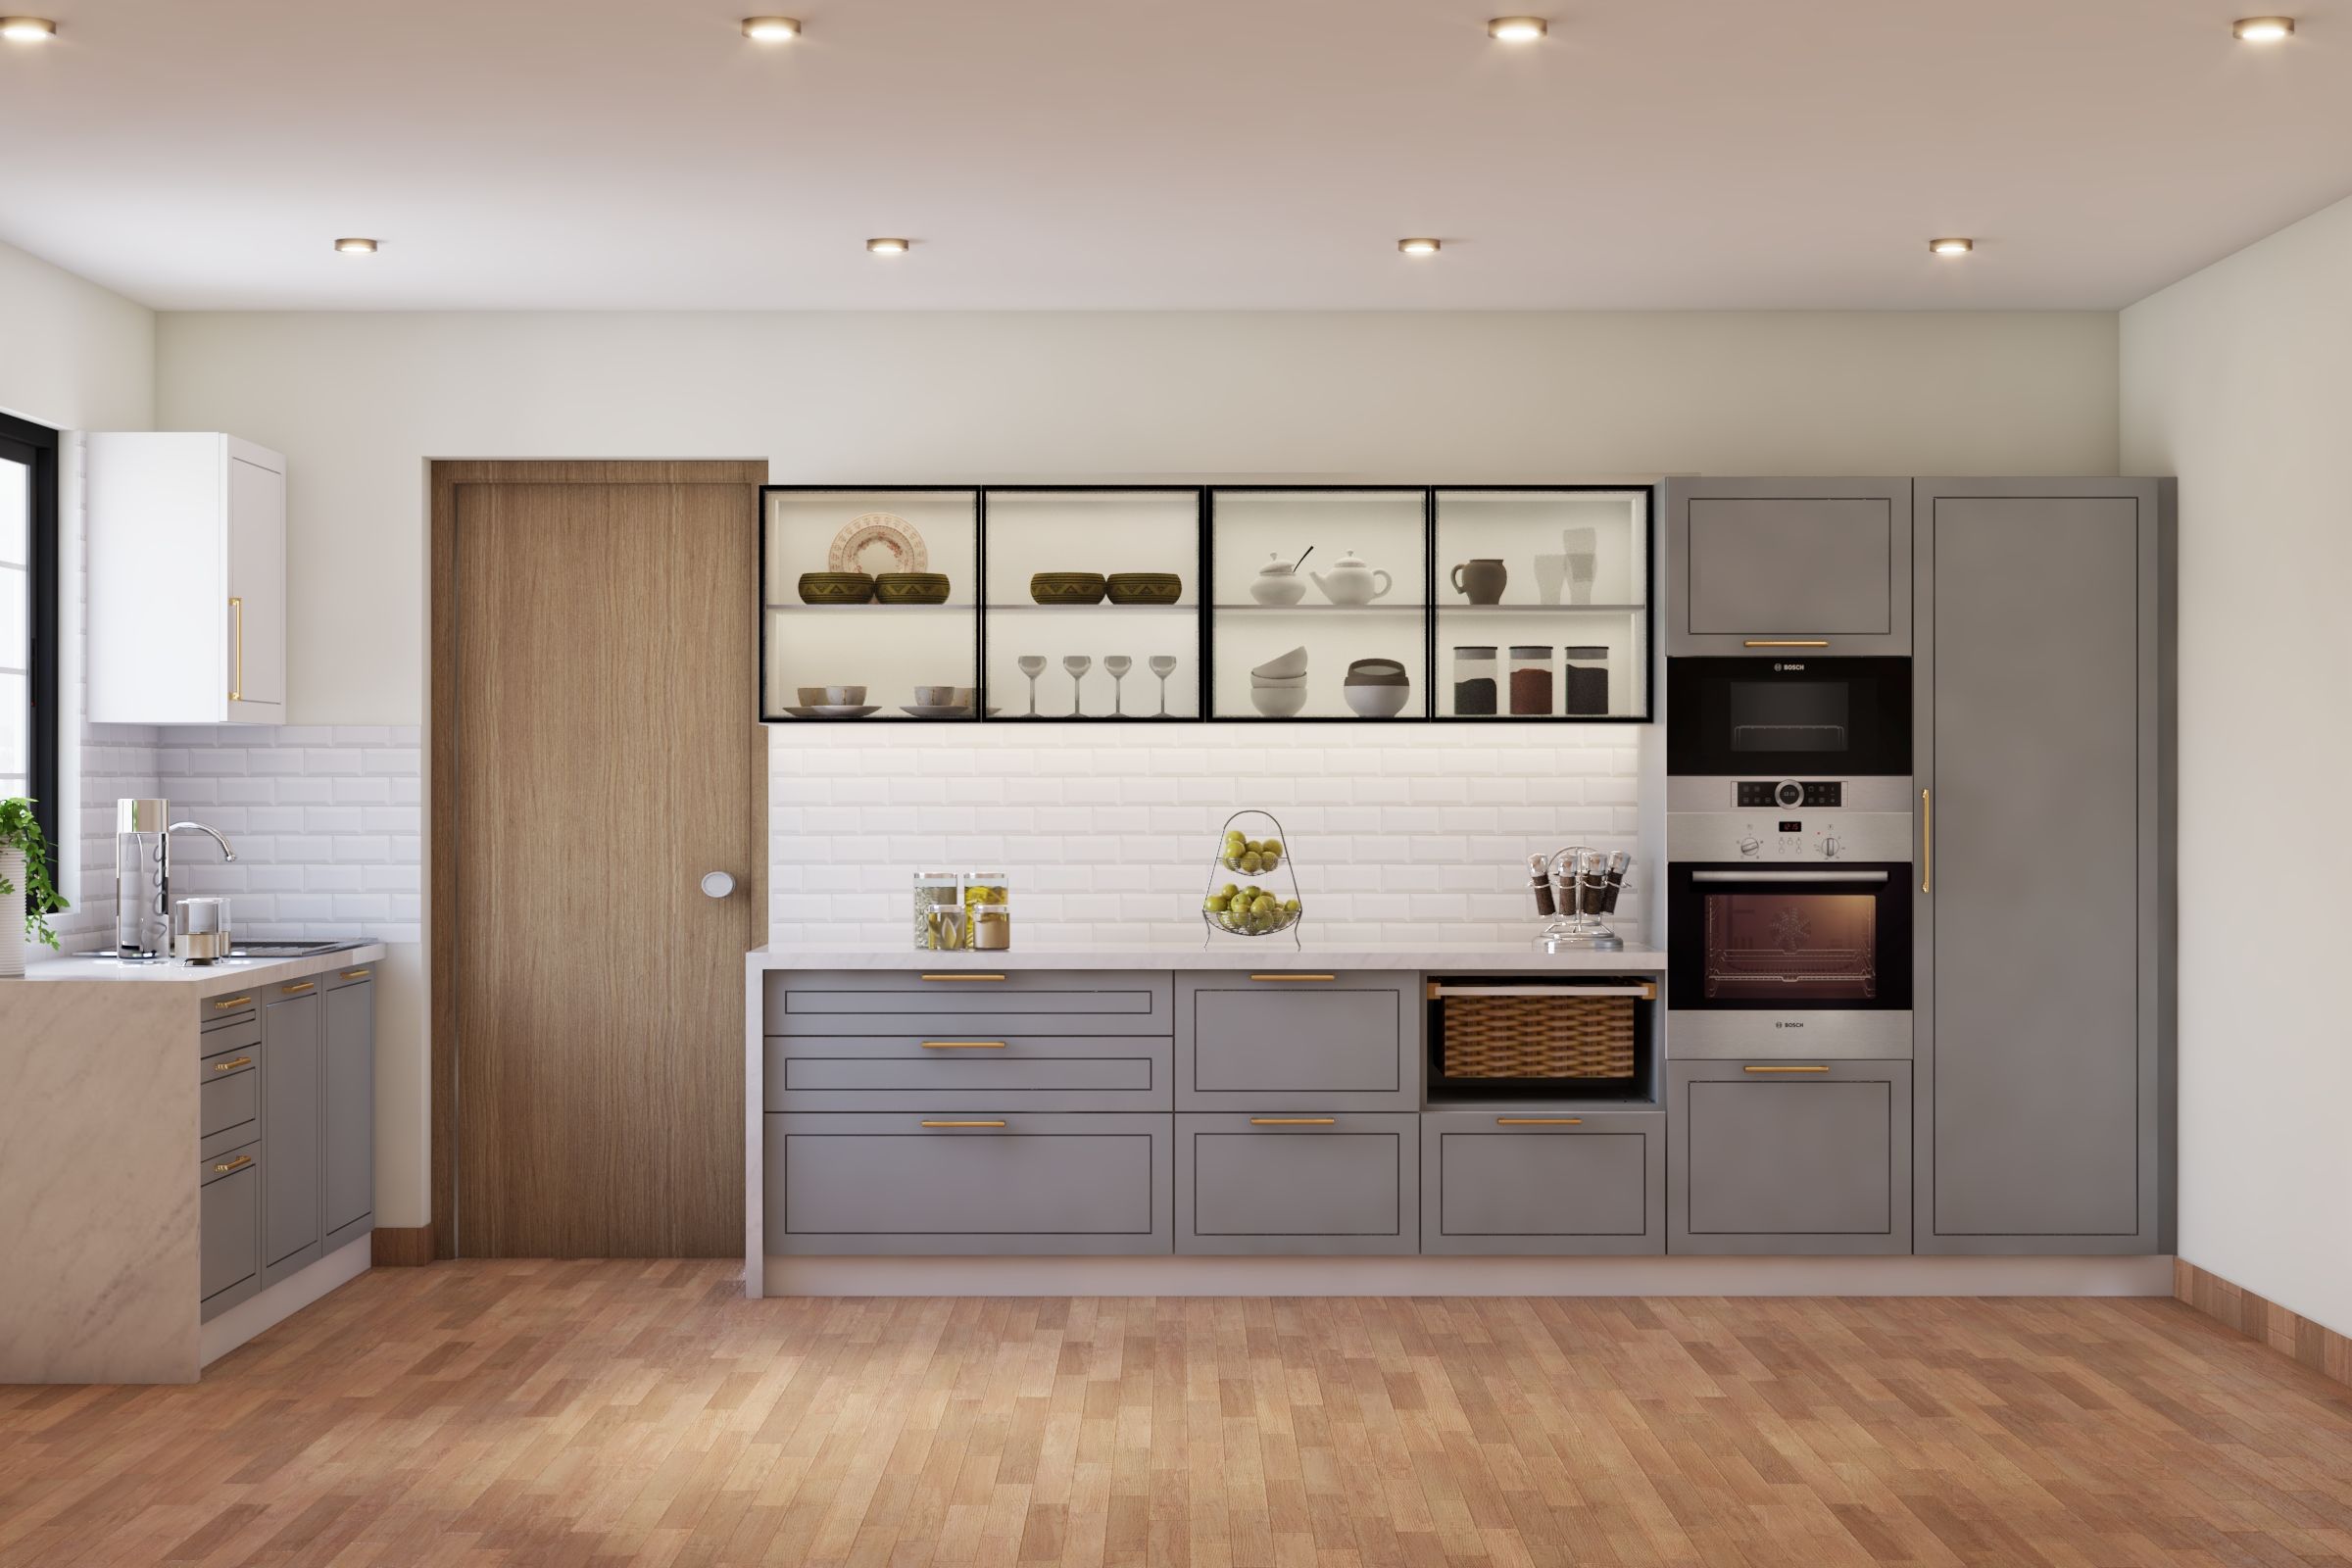 Grey Modern Modular Kitchen Design With Wooden Flooring